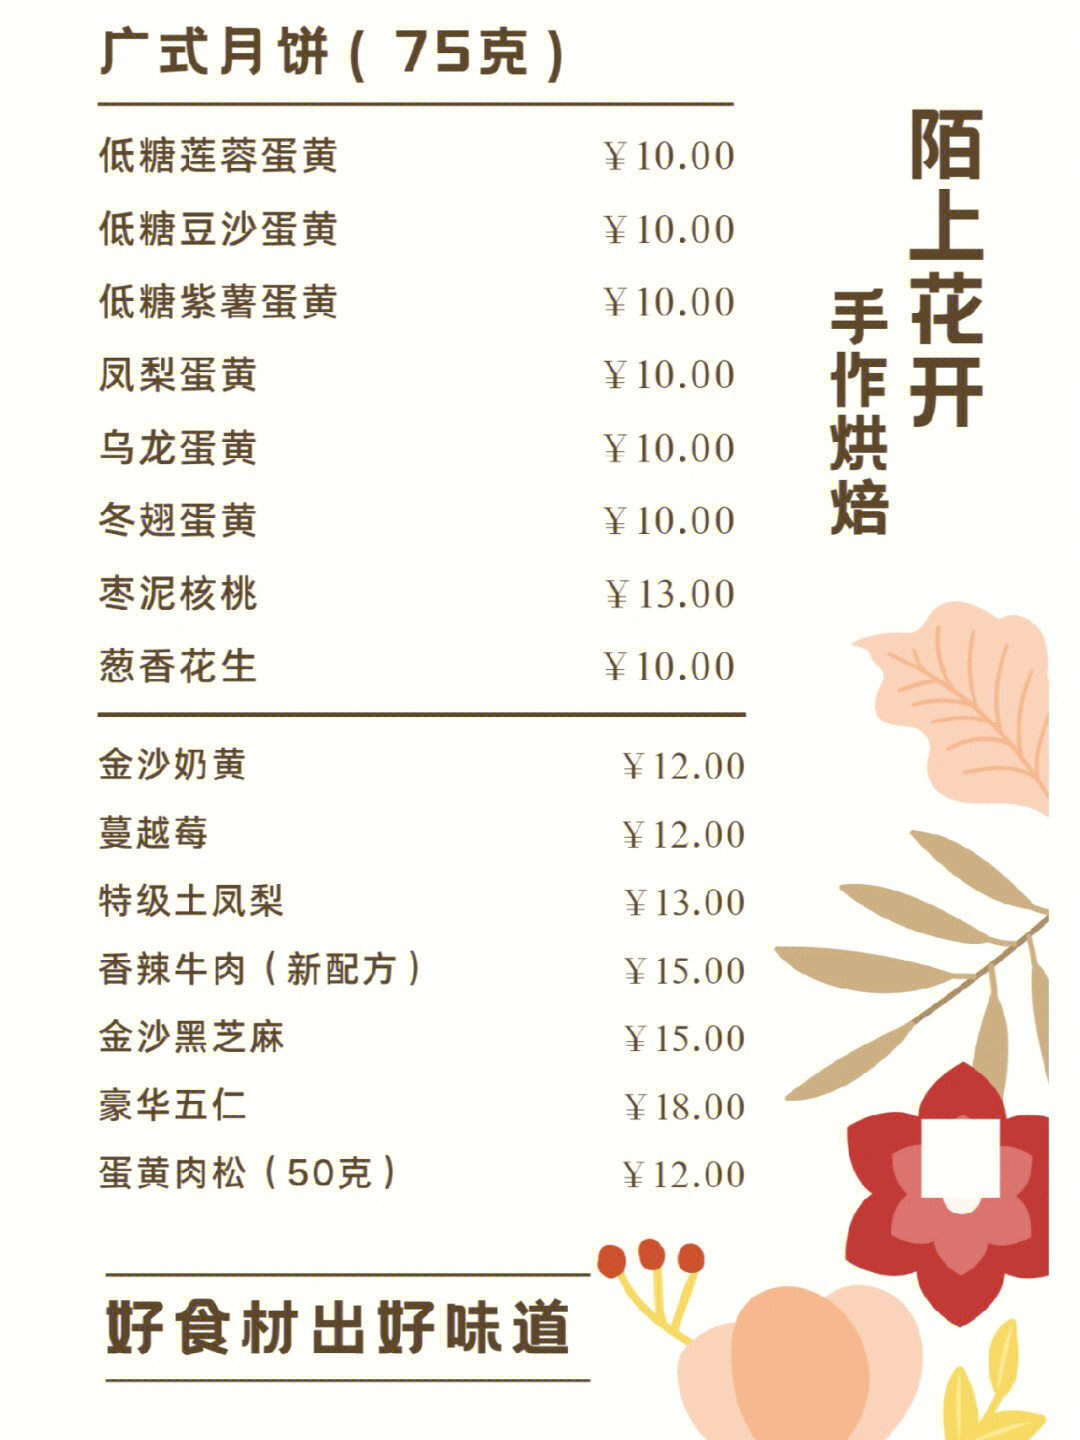 开元大酒店月饼价格图片